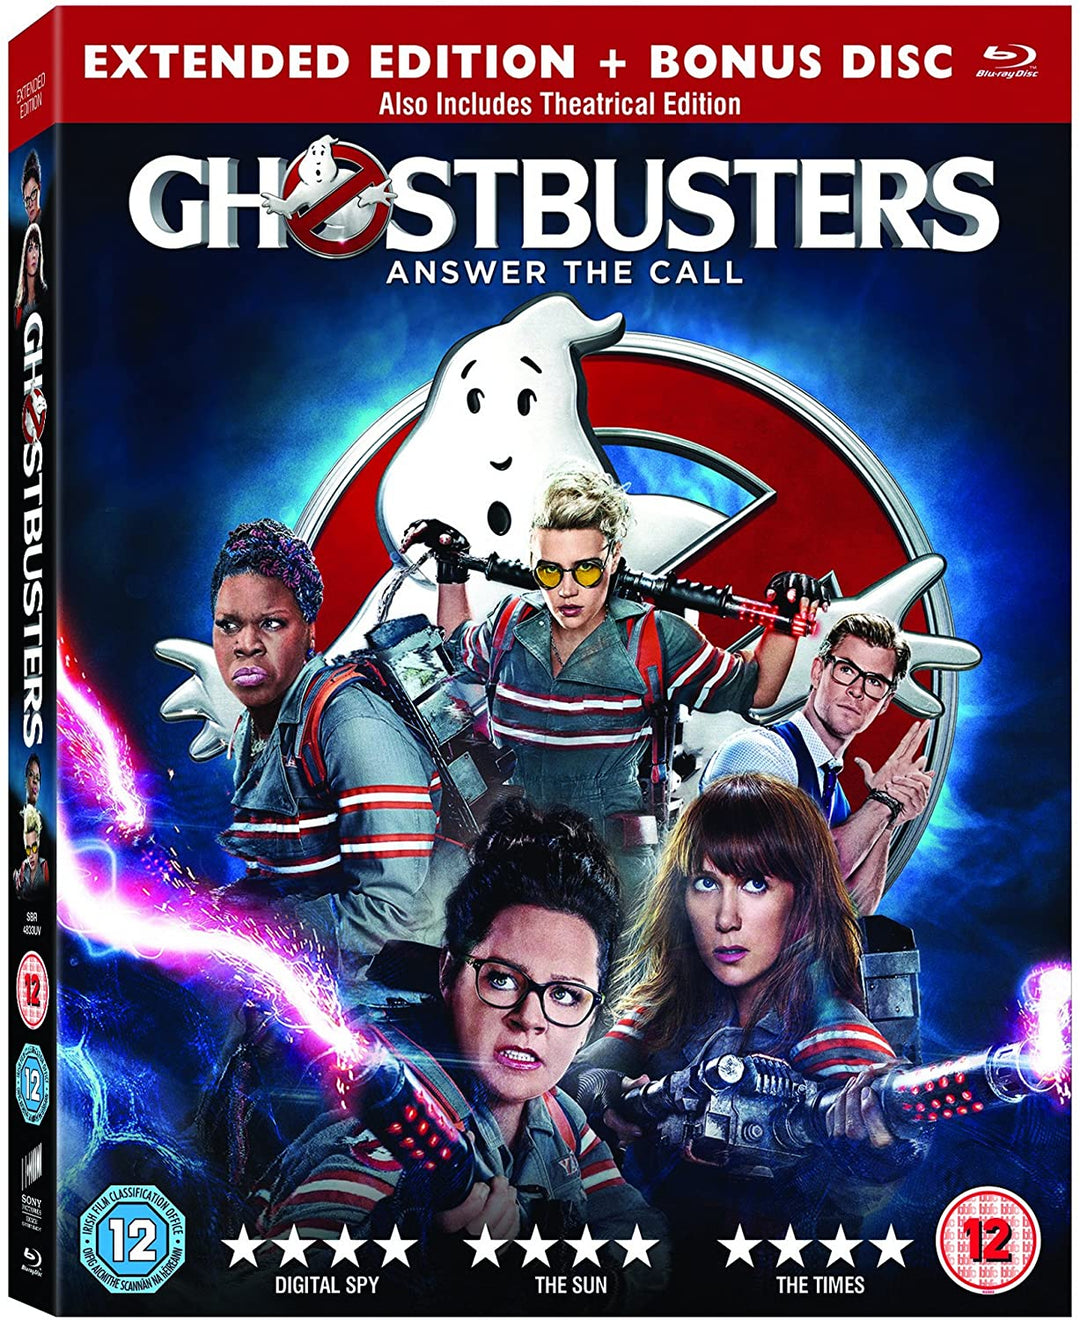 Ghostbusters [Blu-ray] [2016] [Region frei]